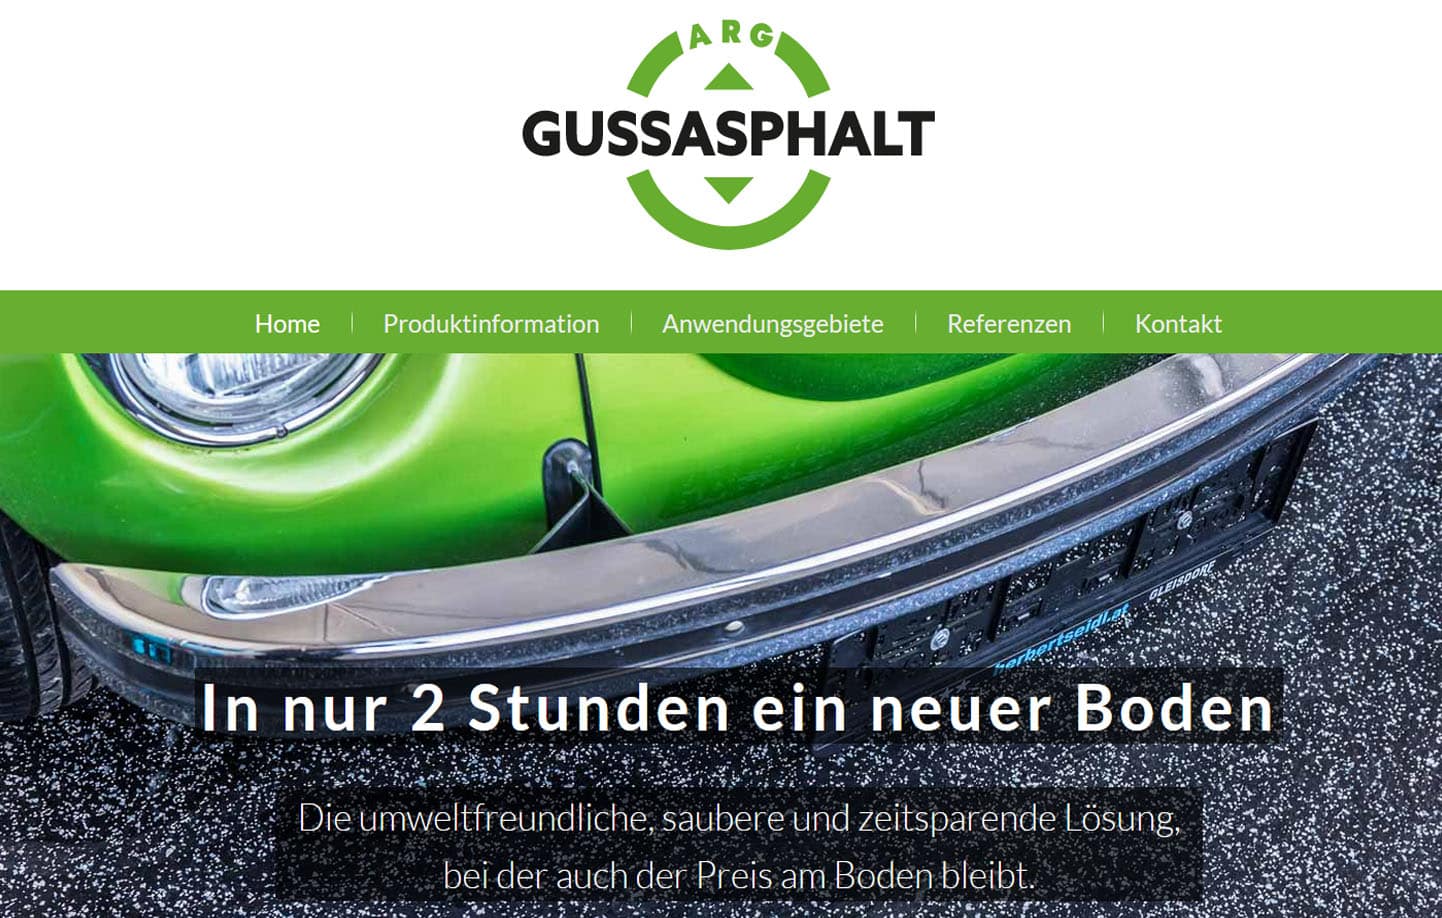 ARG Gussasphalt GmbH: Belag für Werkstätten, Garagen